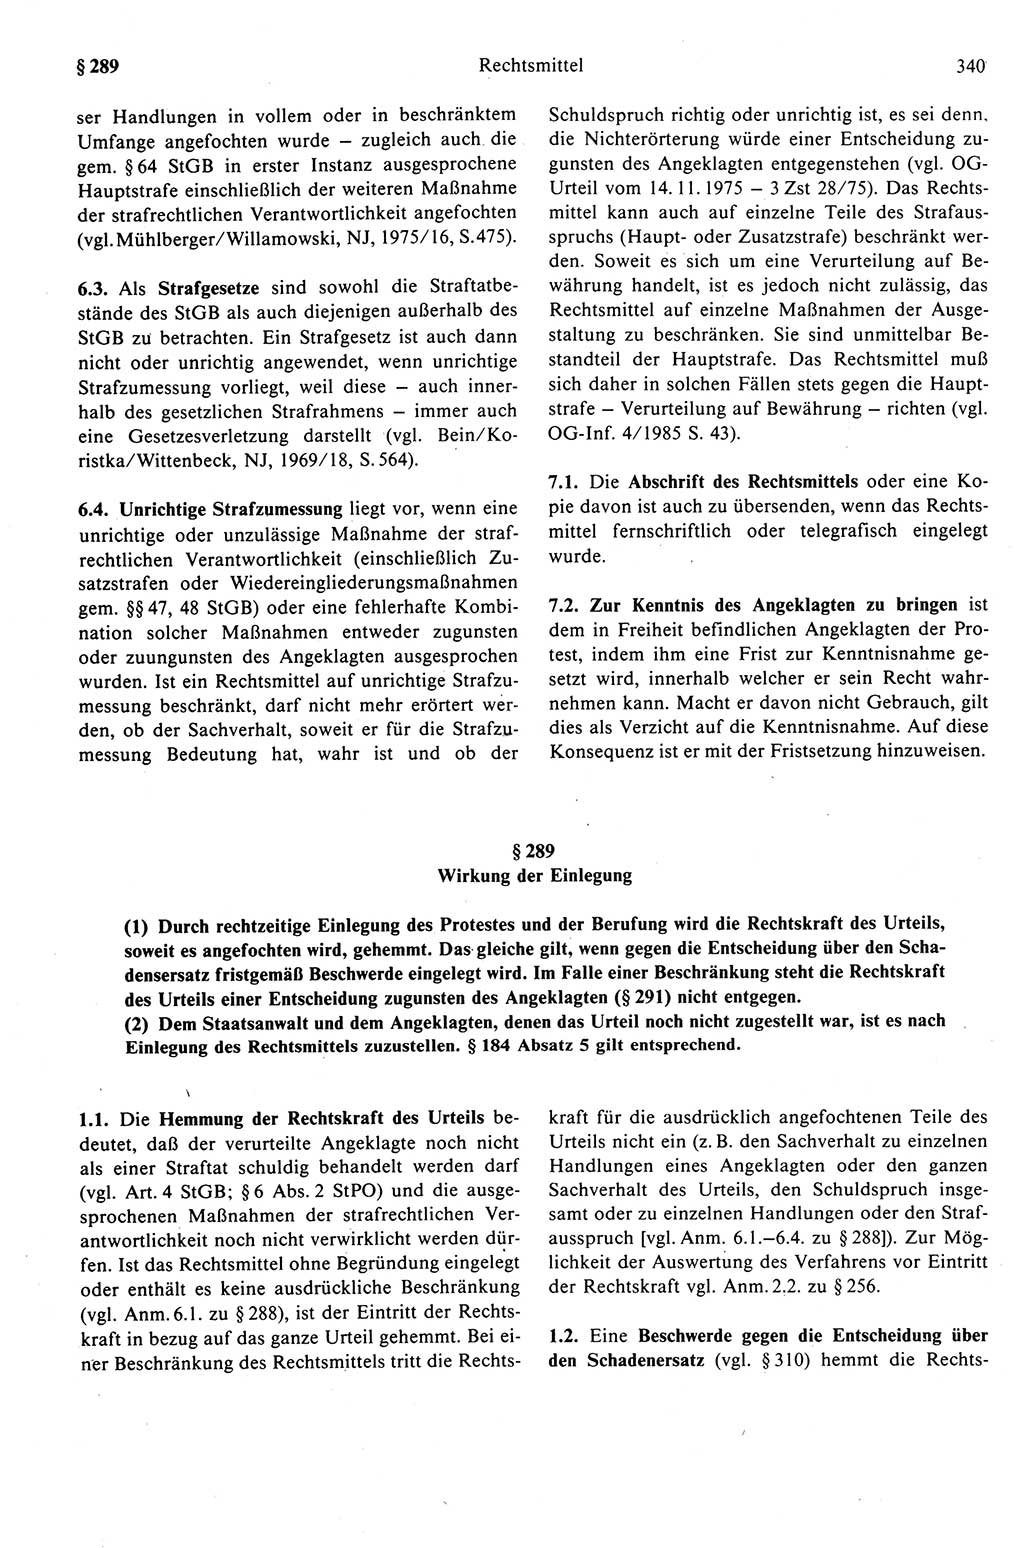 Strafprozeßrecht der DDR (Deutsche Demokratische Republik), Kommentar zur Strafprozeßordnung (StPO) 1989, Seite 340 (Strafprozeßr. DDR Komm. StPO 1989, S. 340)